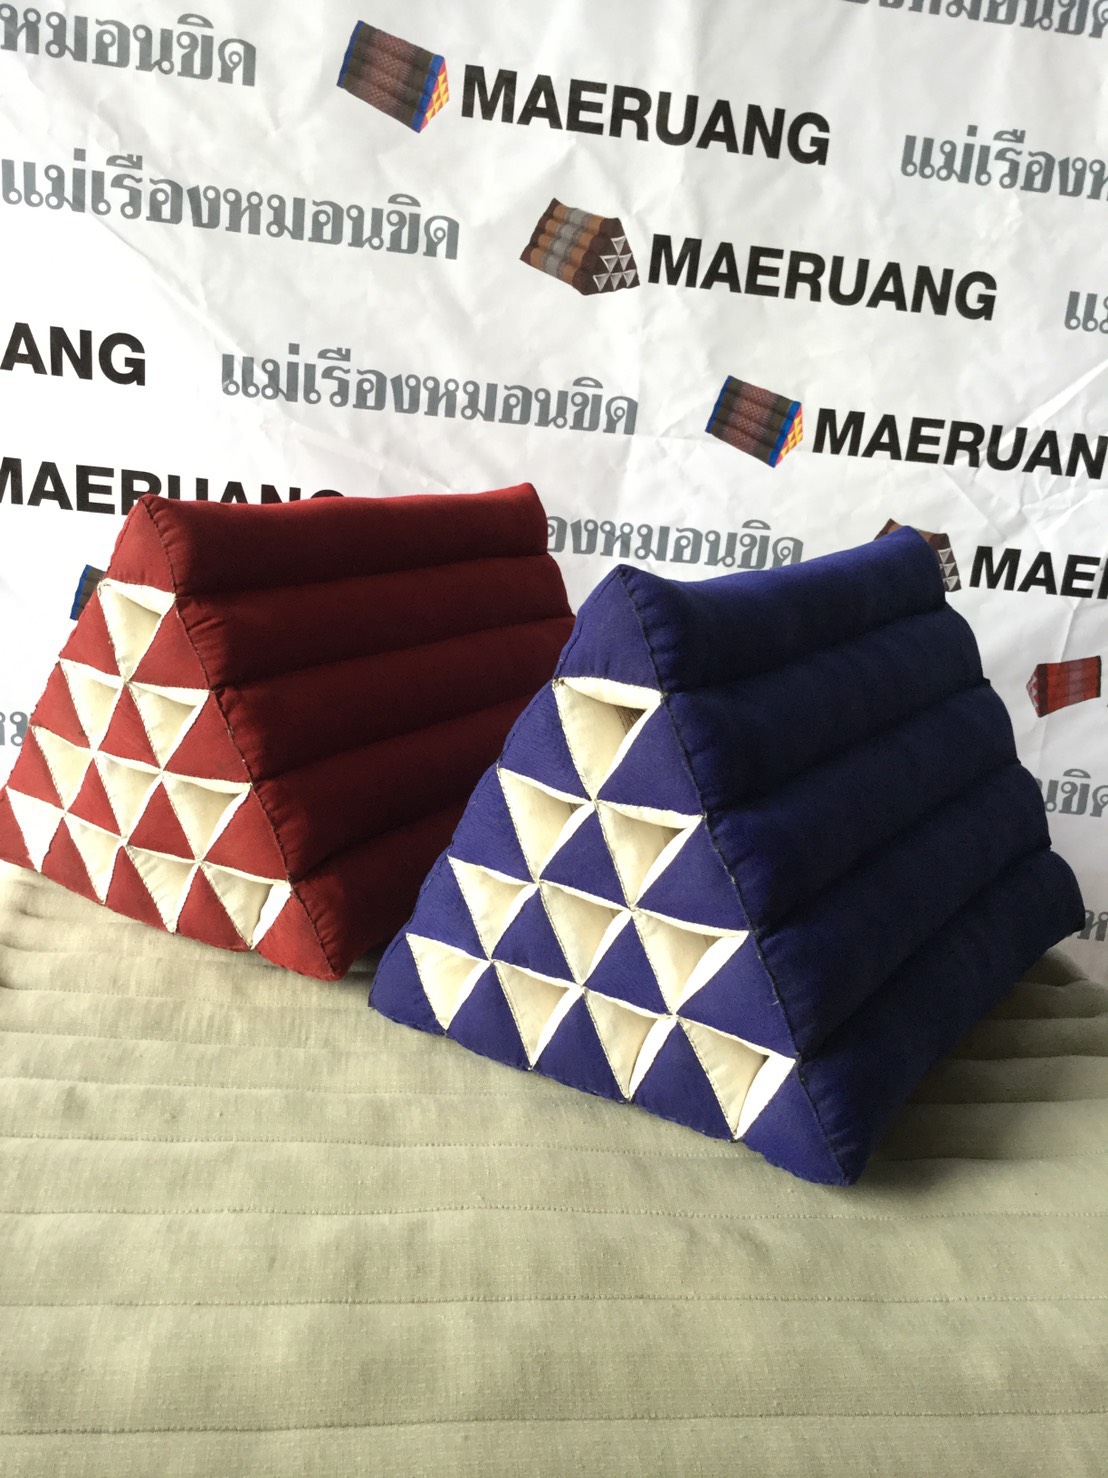 หมอนสามเหลี่ยมXL สีคลาสสิค มีให้เลือกมากกว่า8สี ขนาด 40x55x36cm.  🔥ของแท้ดั้งเดิม ไม่แท้ยินดีคืนเงิน3เท่า🔥